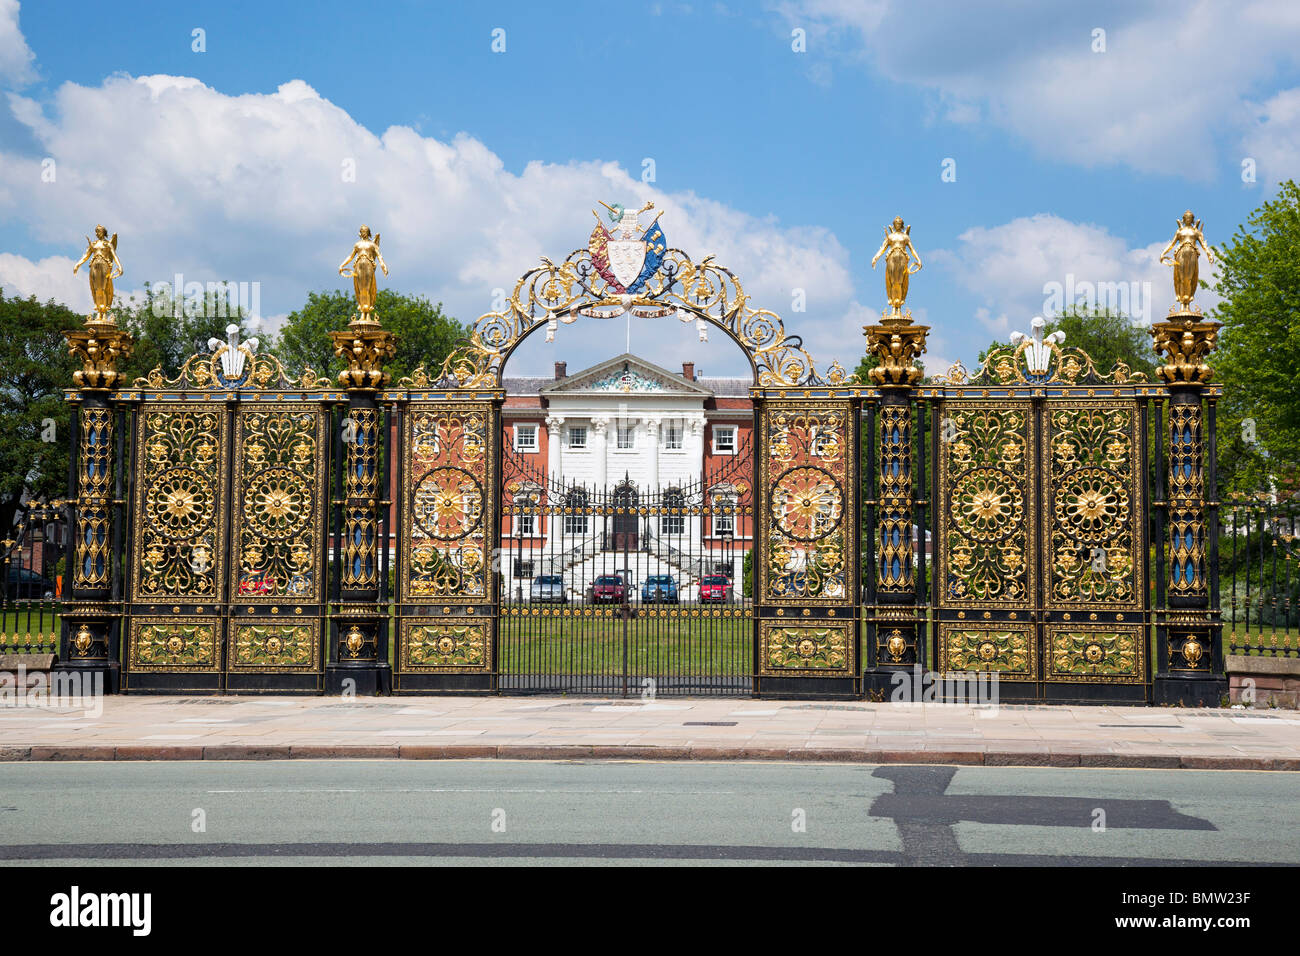 Warrington town hall gates known locally as the Golden Gates. Stock Photo